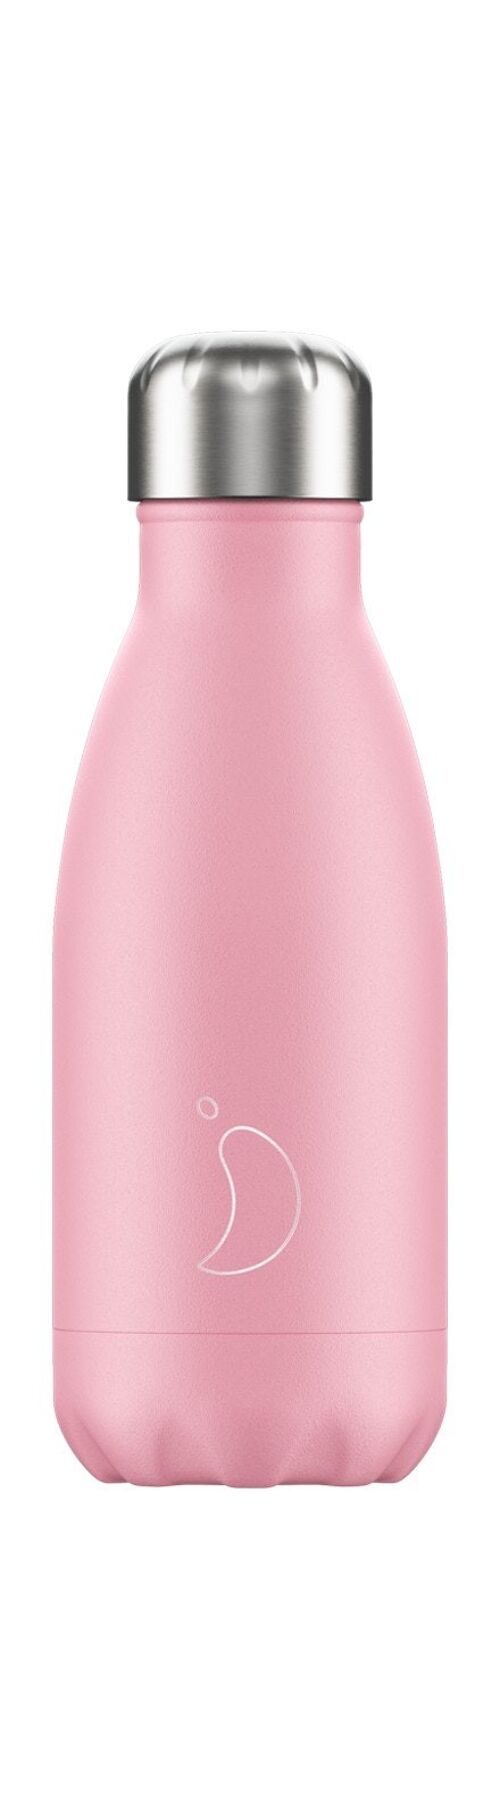 Trinkflasche 260ml Pastel Pink